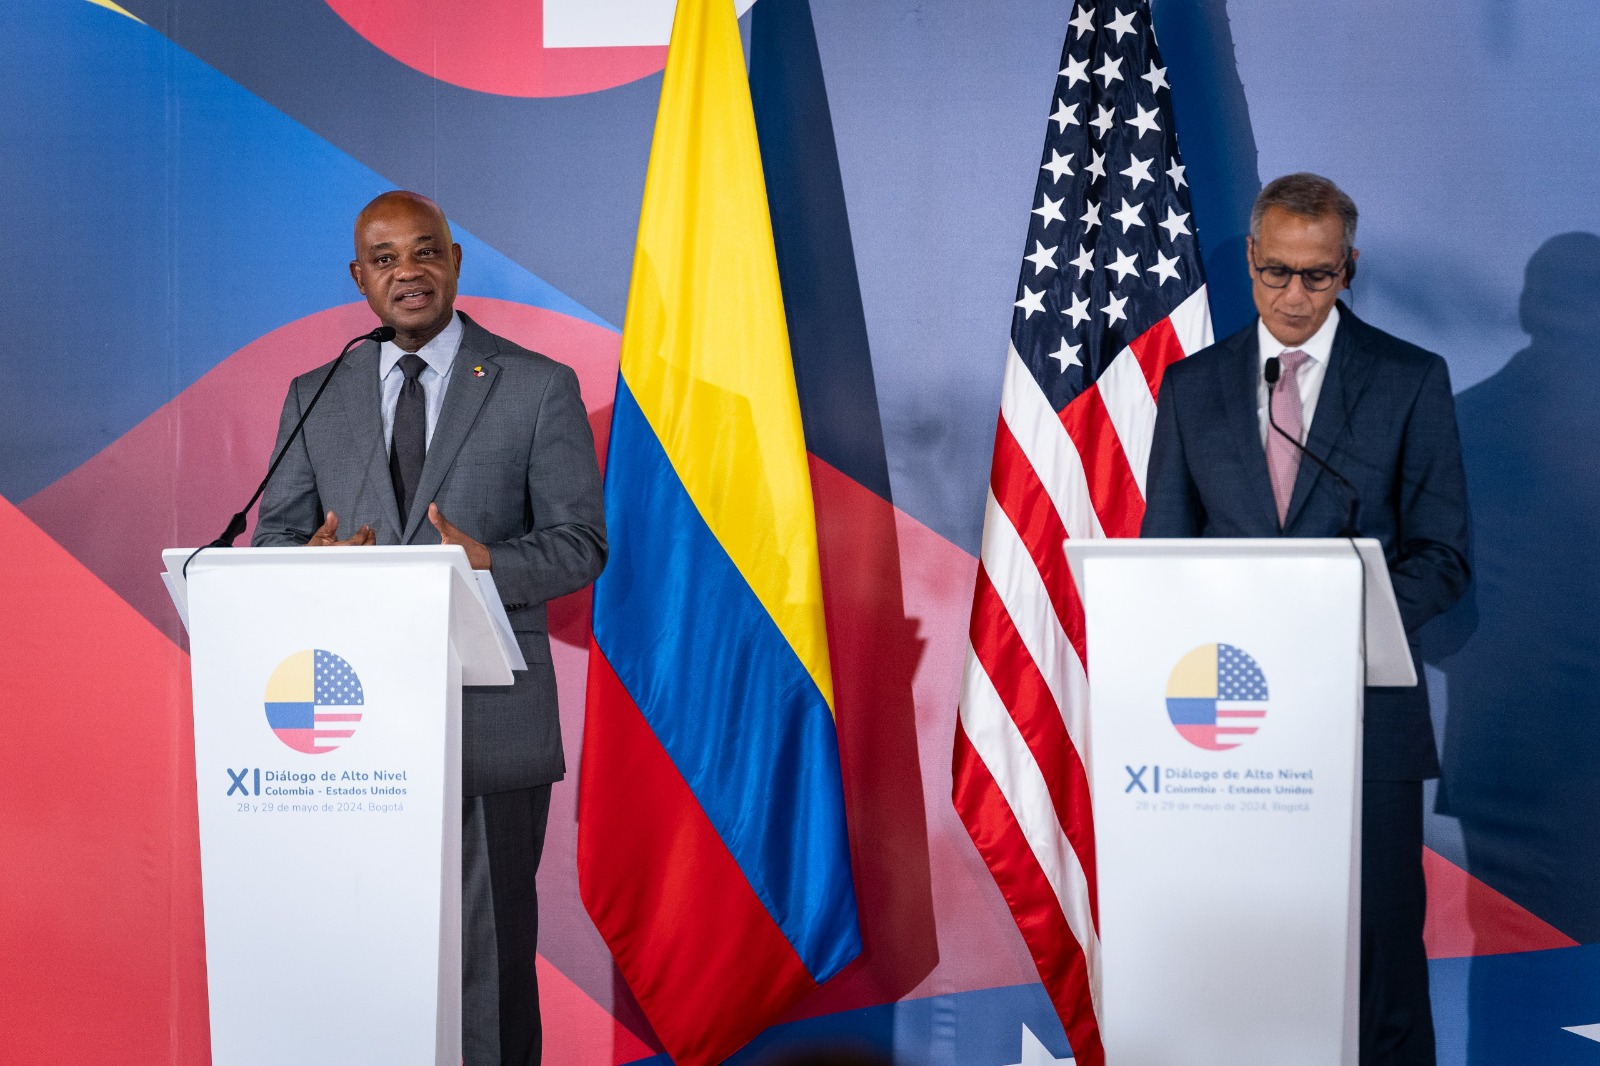 Declaración del XI Diálogo de Alto Nivel Colombia - Estados Unidos